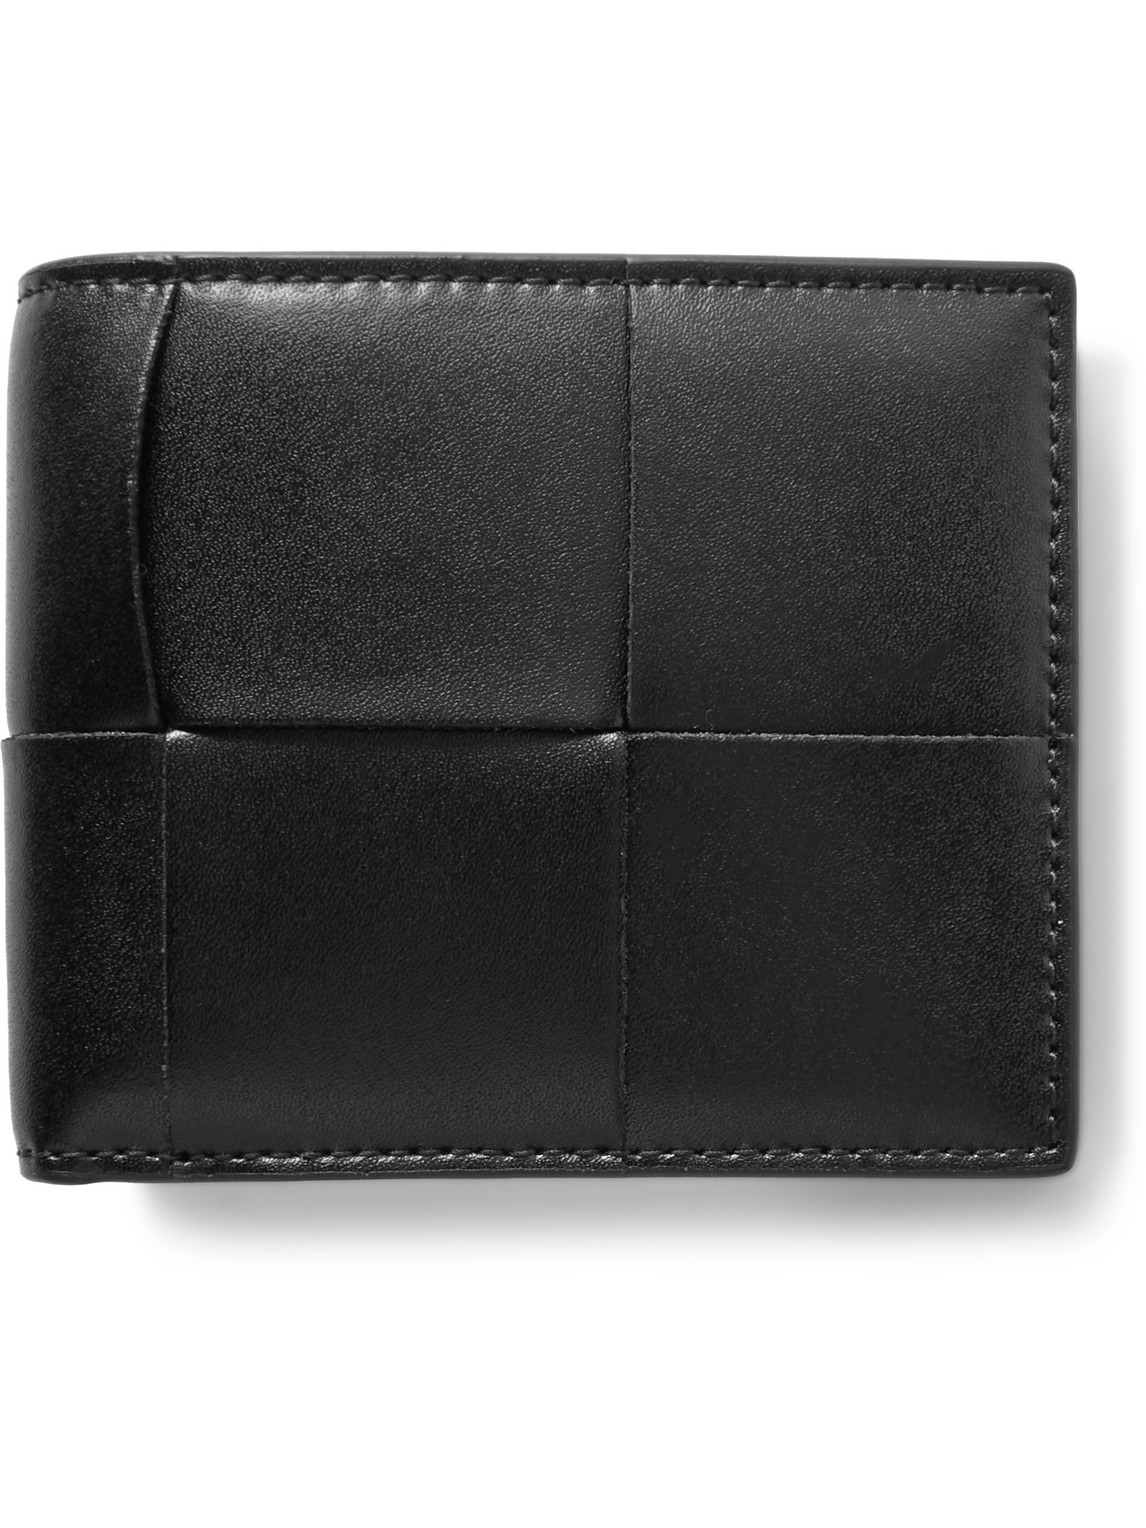 Bottega Veneta Cassette Intrecciato Leather Billfold Wallet In Black